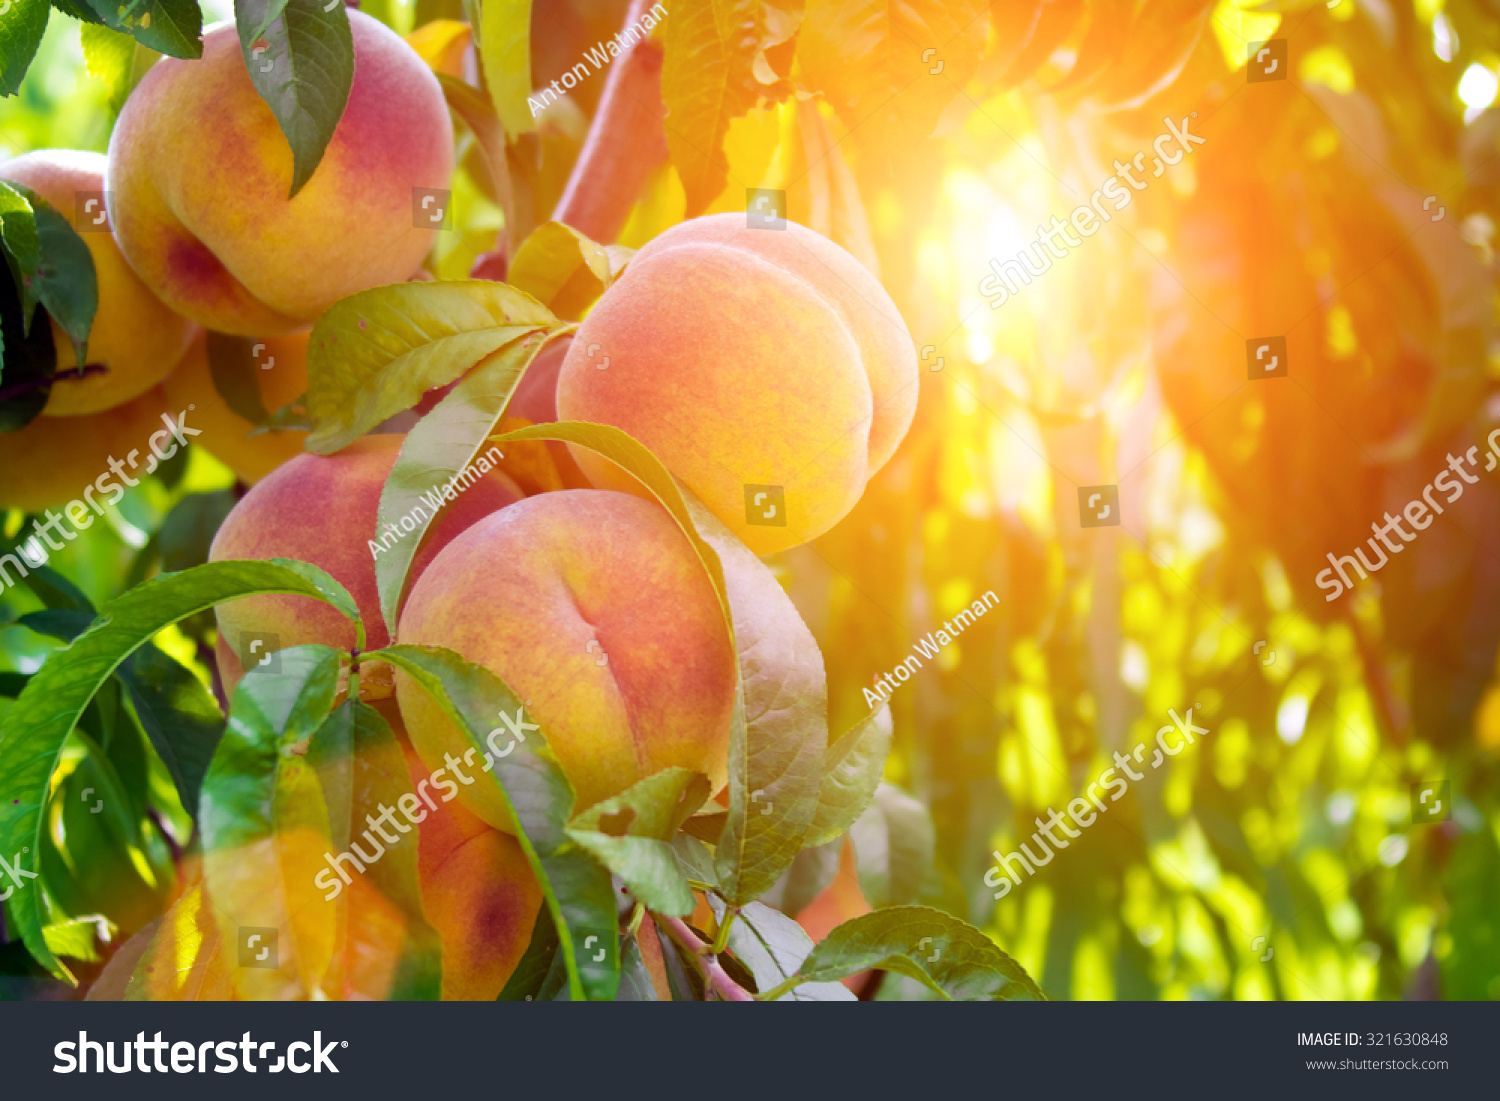 Fresh peach tree #321630848